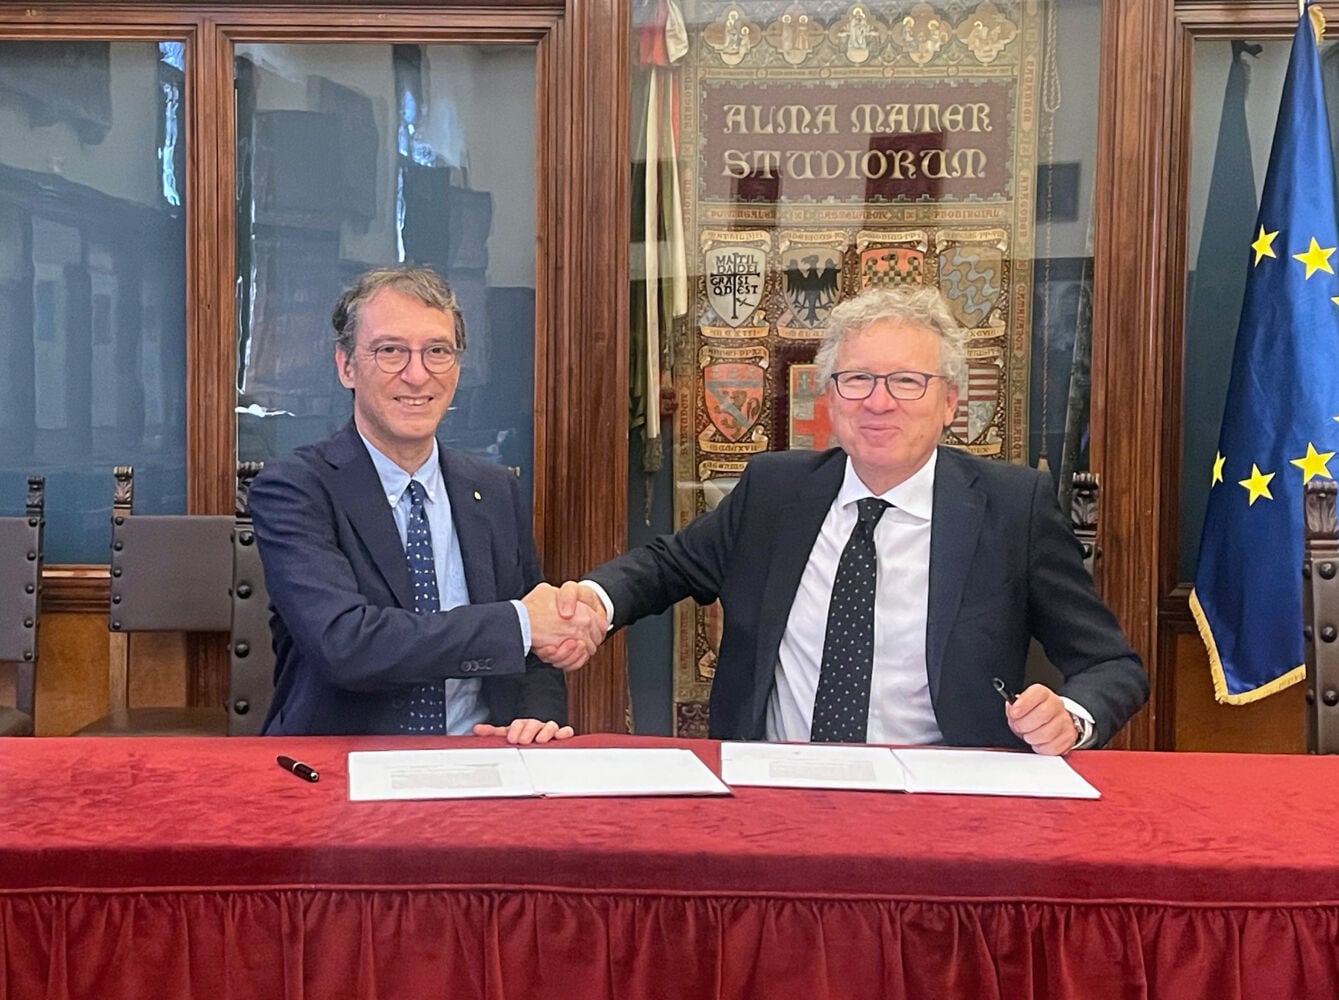 Università di Bologna e Scm Group S.p.A. siglano un accordo di collaborazione